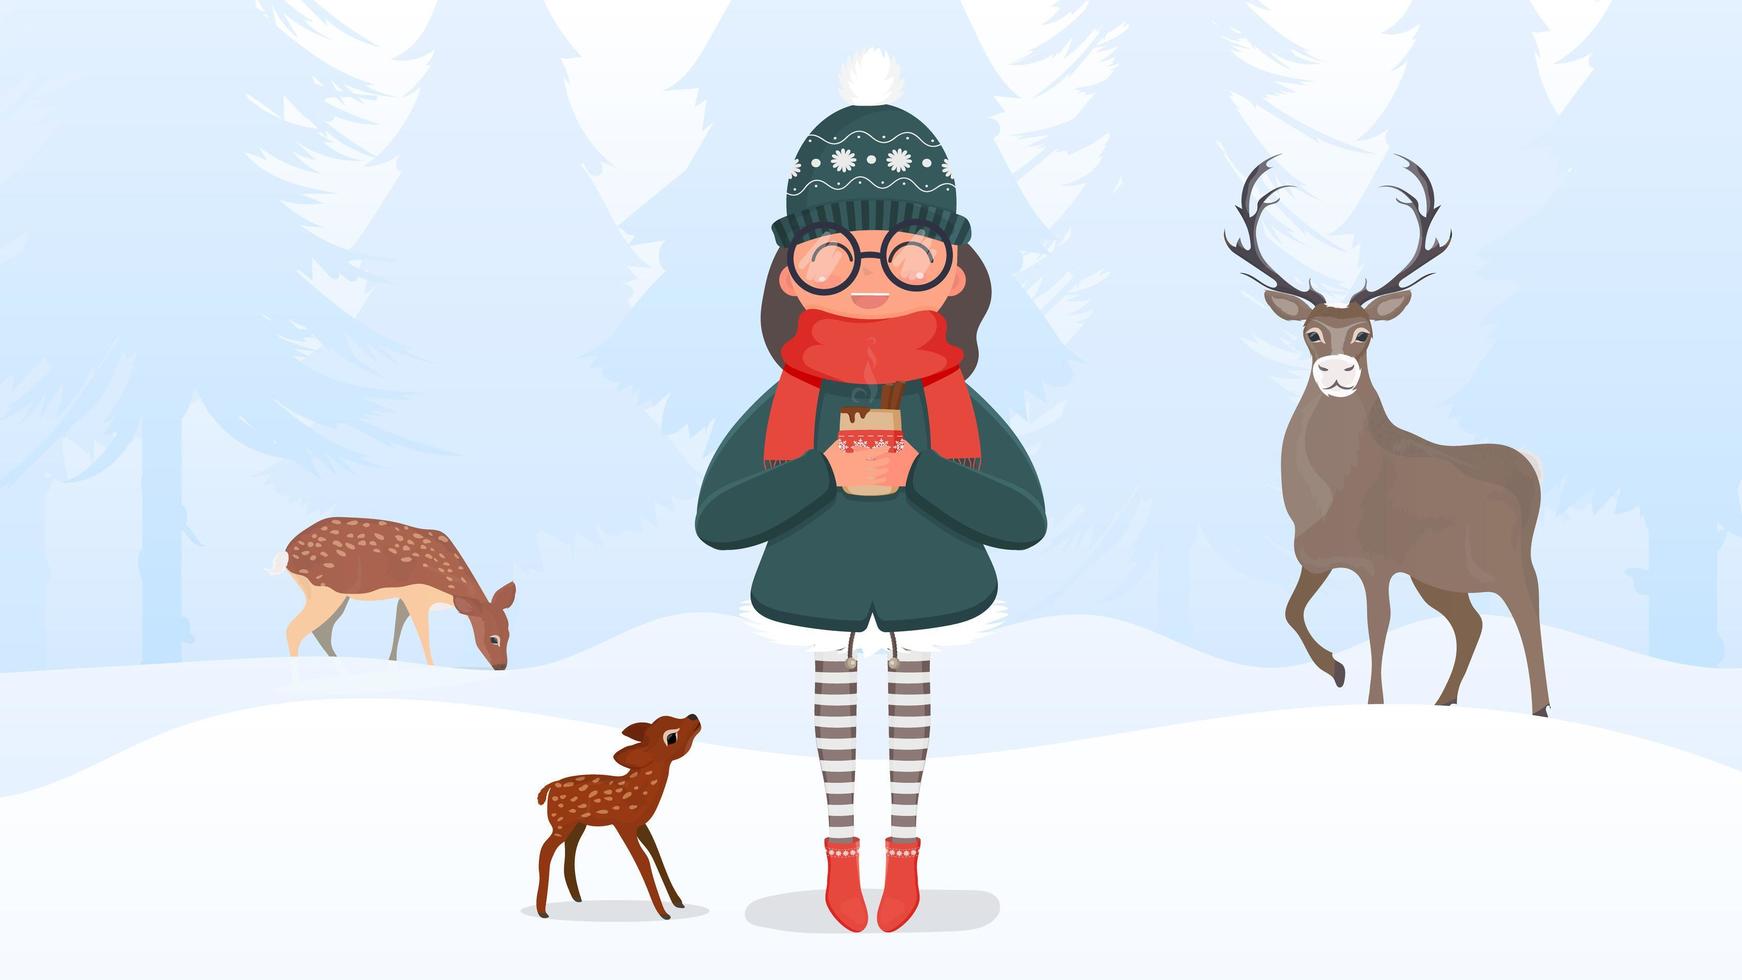 eine frau mit winterwarmer kleidung und brille hält ein heißes getränk in den händen. Mädchen in einem verschneiten Wald mit Rehen. fertige Postkarte für ein Winterthema. Vektor-Illustration. vektor